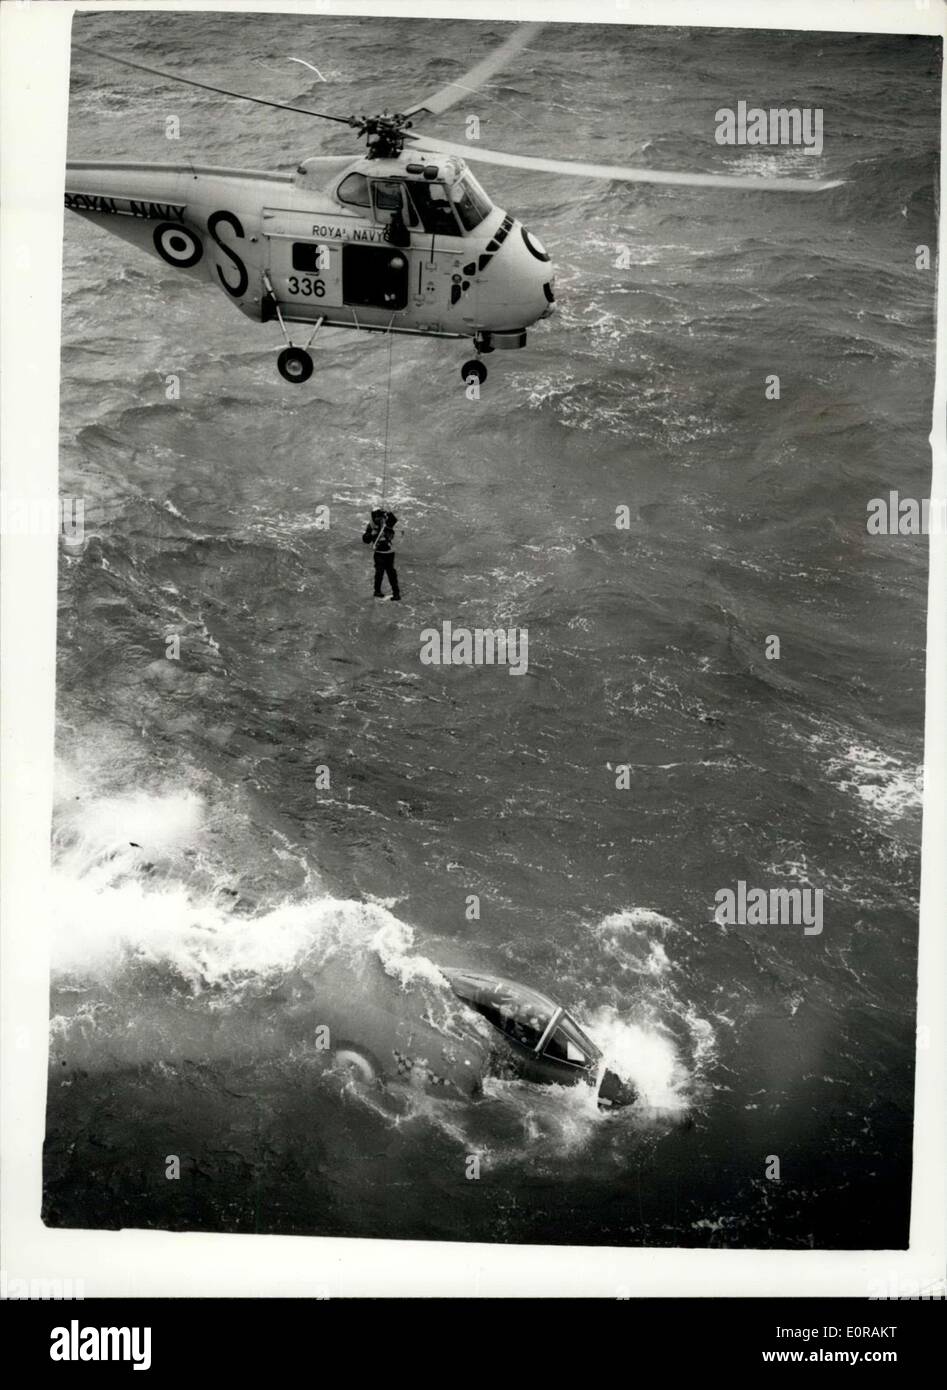 Sett. 25, 1958 - Scimitar crash aereo in mare quando si atterra sulla portaerei: uno della Marina è di nuovo twin-motore Scimitar aeromobili del Fleet Air Arm, si è schiantato in mare questo di er-mezzogiorno, quando lo sbarco sulla portaerei H.M.S. Vittorioso a Portsmouth. Il velivolo è affondata con il pilota, il CDR J.D. Russell ancora in essa. H.M.S. Vittorioso, che ha subito una lunga riattaccare andato a mare fro Portsmouth per la prima cravatta come un R.N. Nave. Essa è stata consegnata al capitano di lunedì. Lei era di andare a prendere il suo aereo prima di andare alla nave mediterraneo Foto Stock